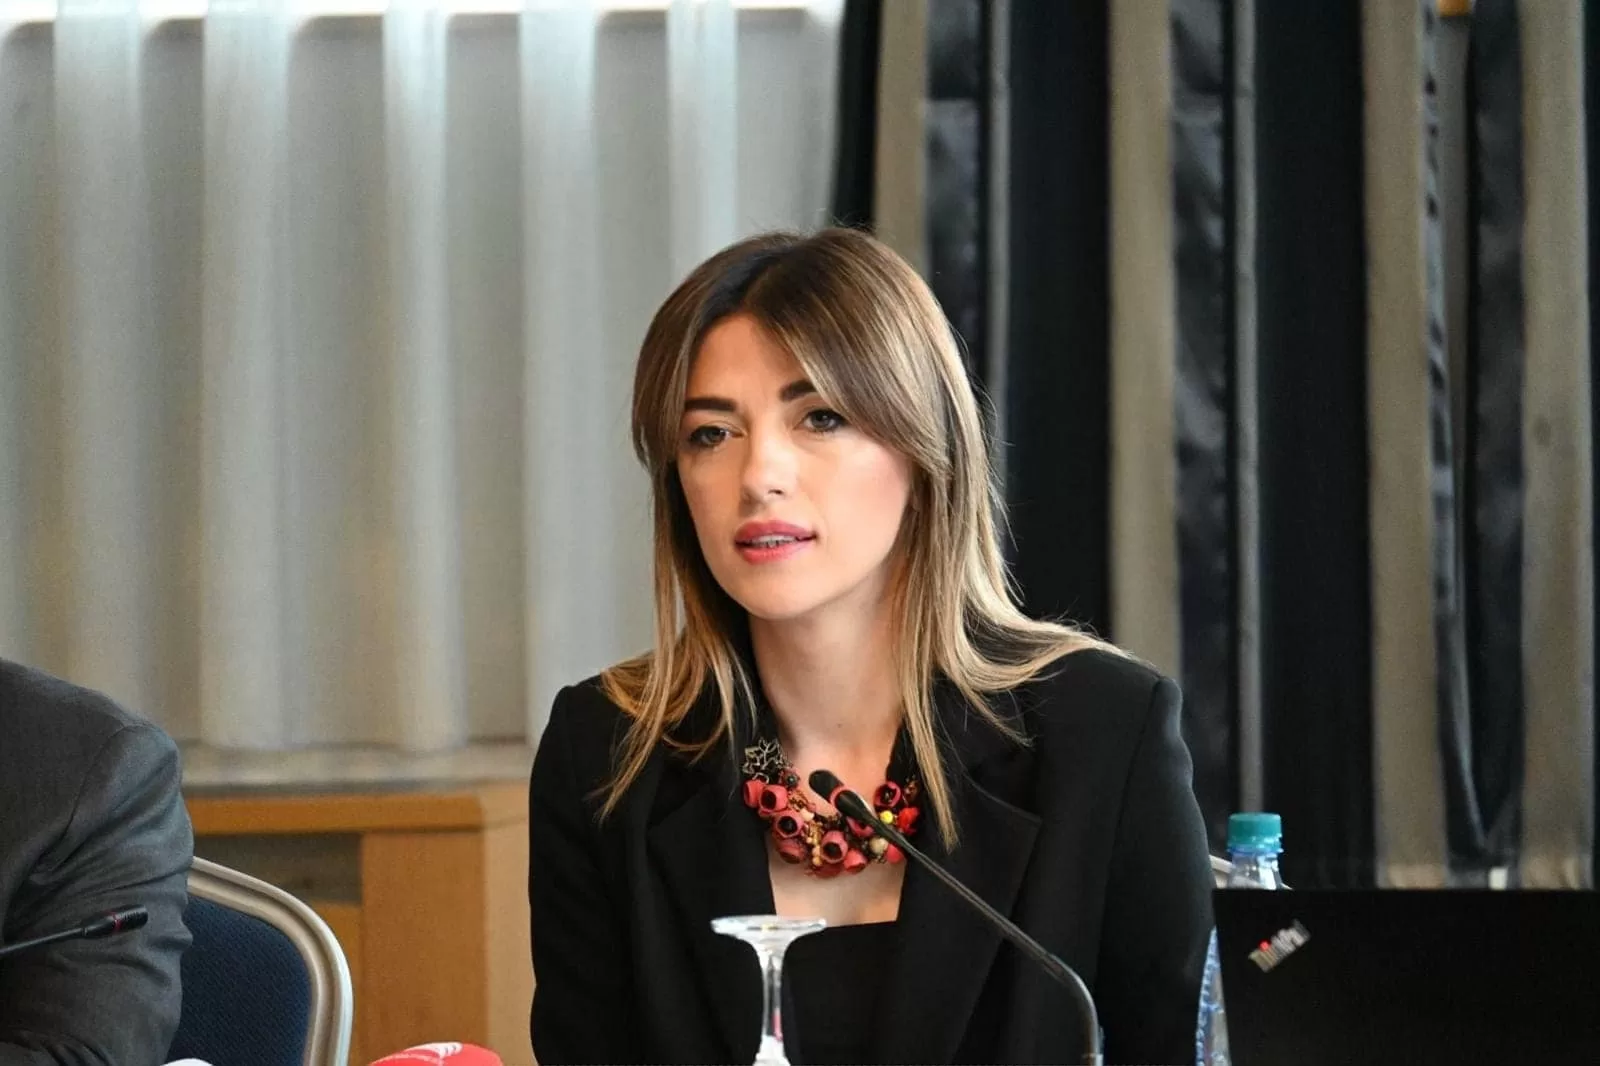 Haxhiu: Vrasjet ndaj grave në Kosovë janë bërë fenomen që tejkalon çdo shqetësim